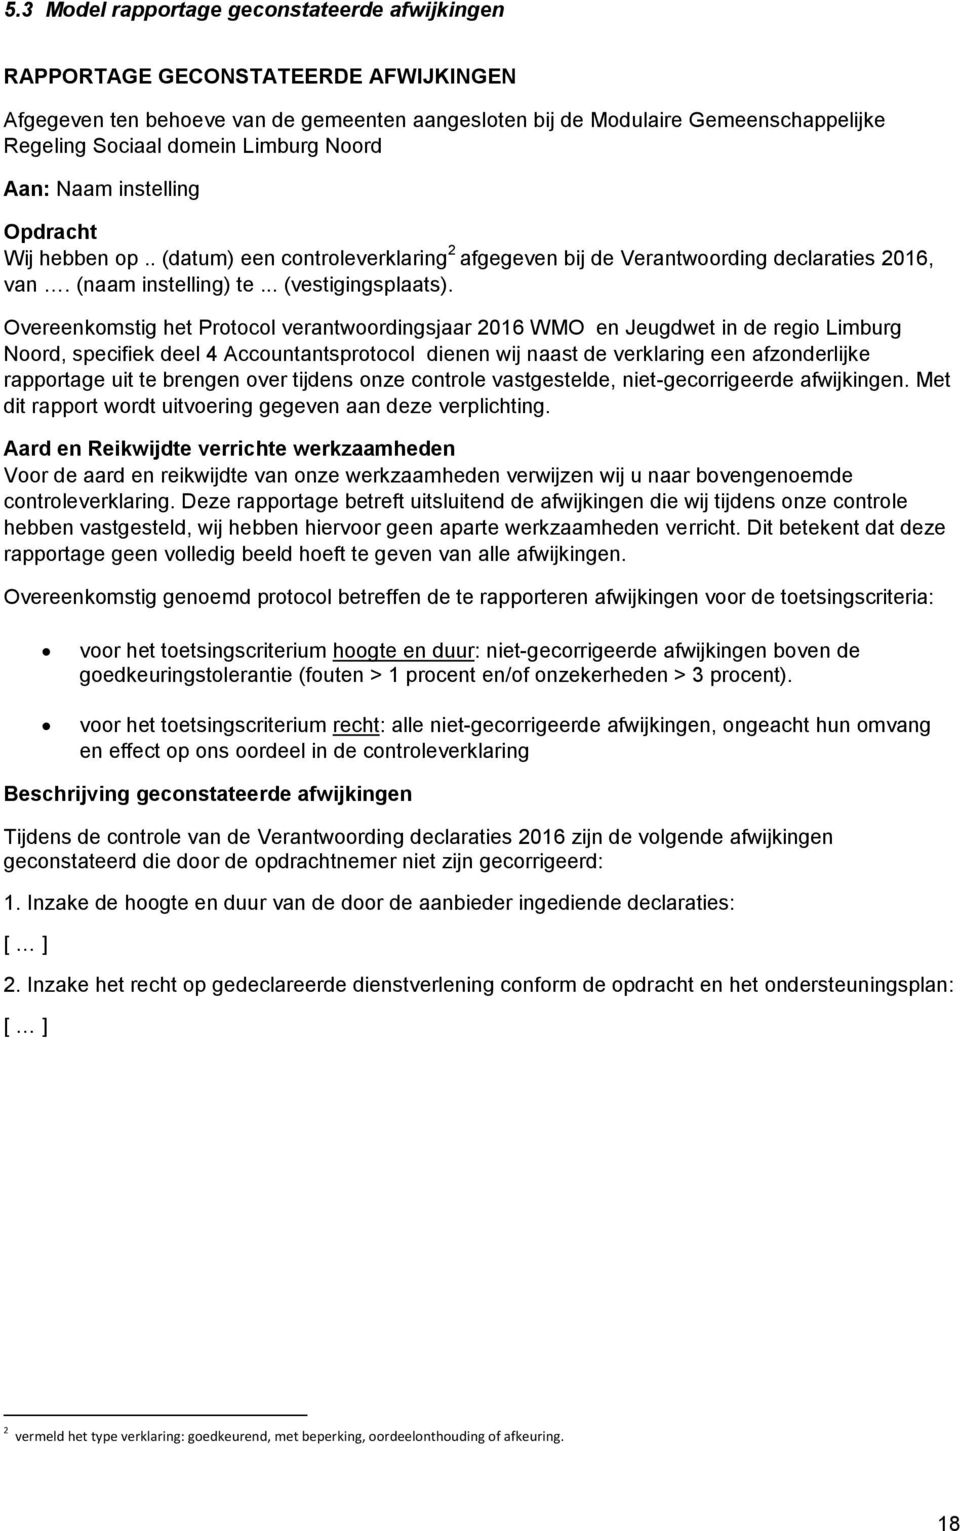 Overeenkomstig het Protocol verantwoordingsjaar 2016 WMO en Jeugdwet in de regio Limburg Noord, specifiek deel 4 Accountantsprotocol dienen wij naast de verklaring een afzonderlijke rapportage uit te